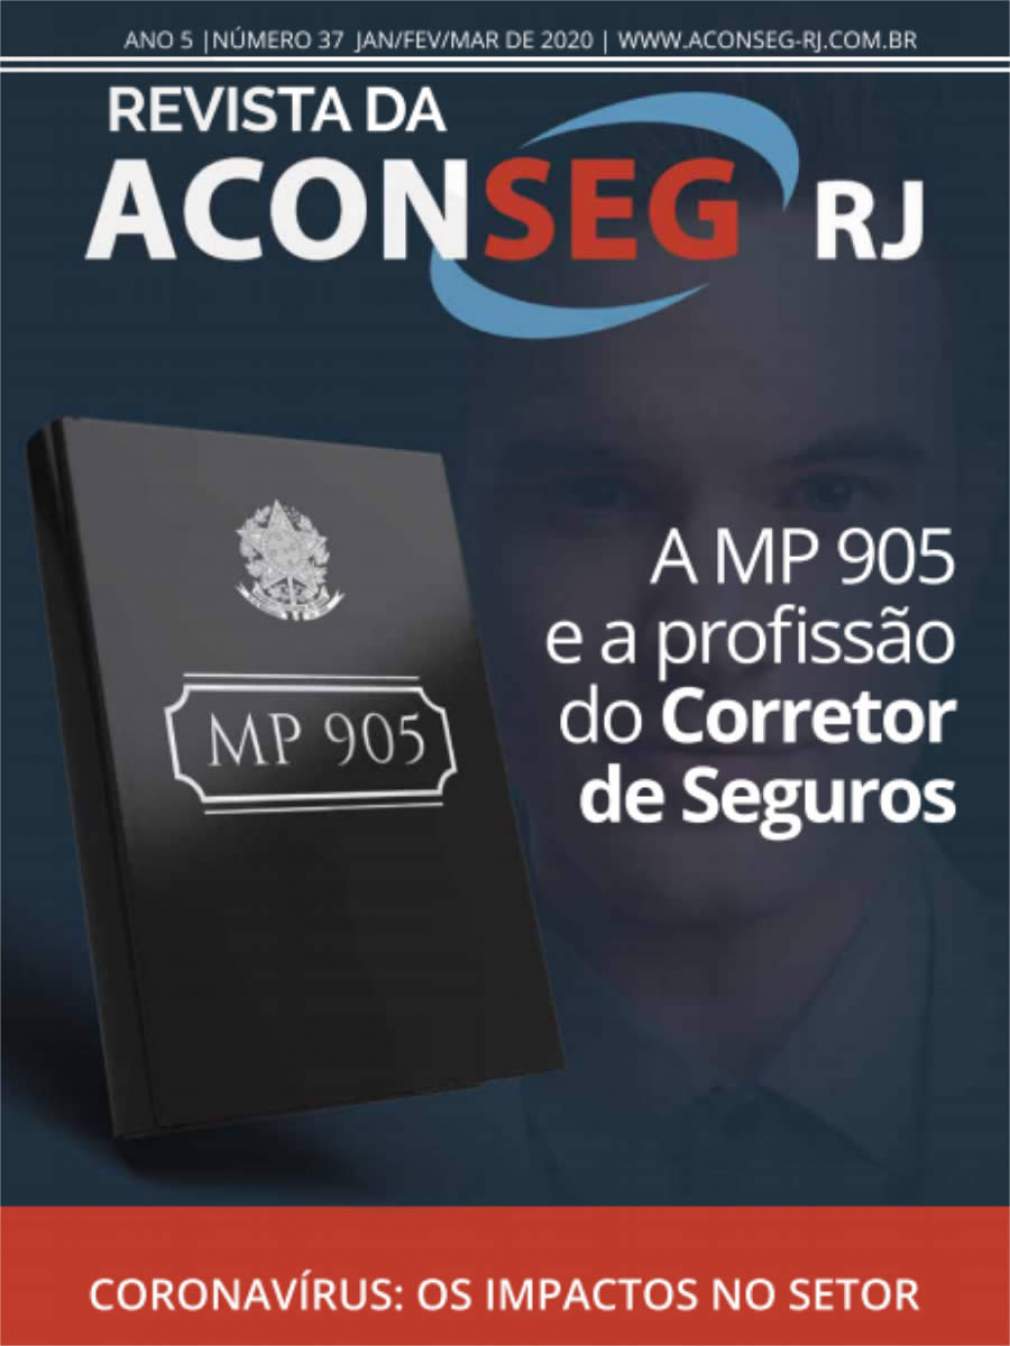 37ª Revista da Aconseg aborda Coronavírus e MP 905